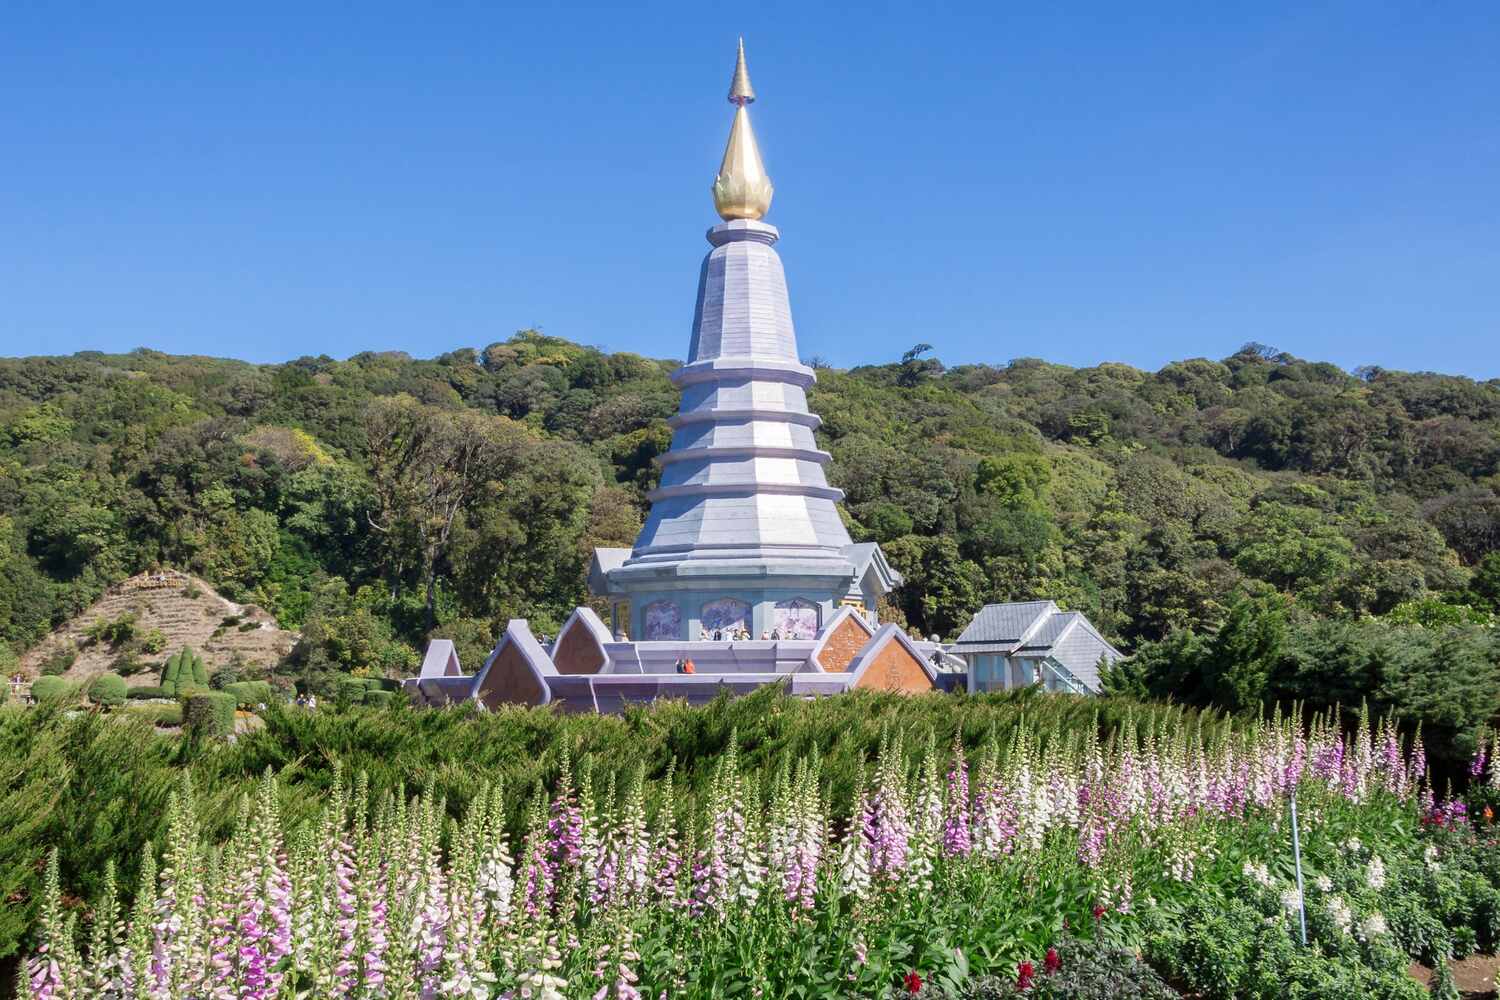 Royal-pagoda-at-Doi-Inthanon-National-Park